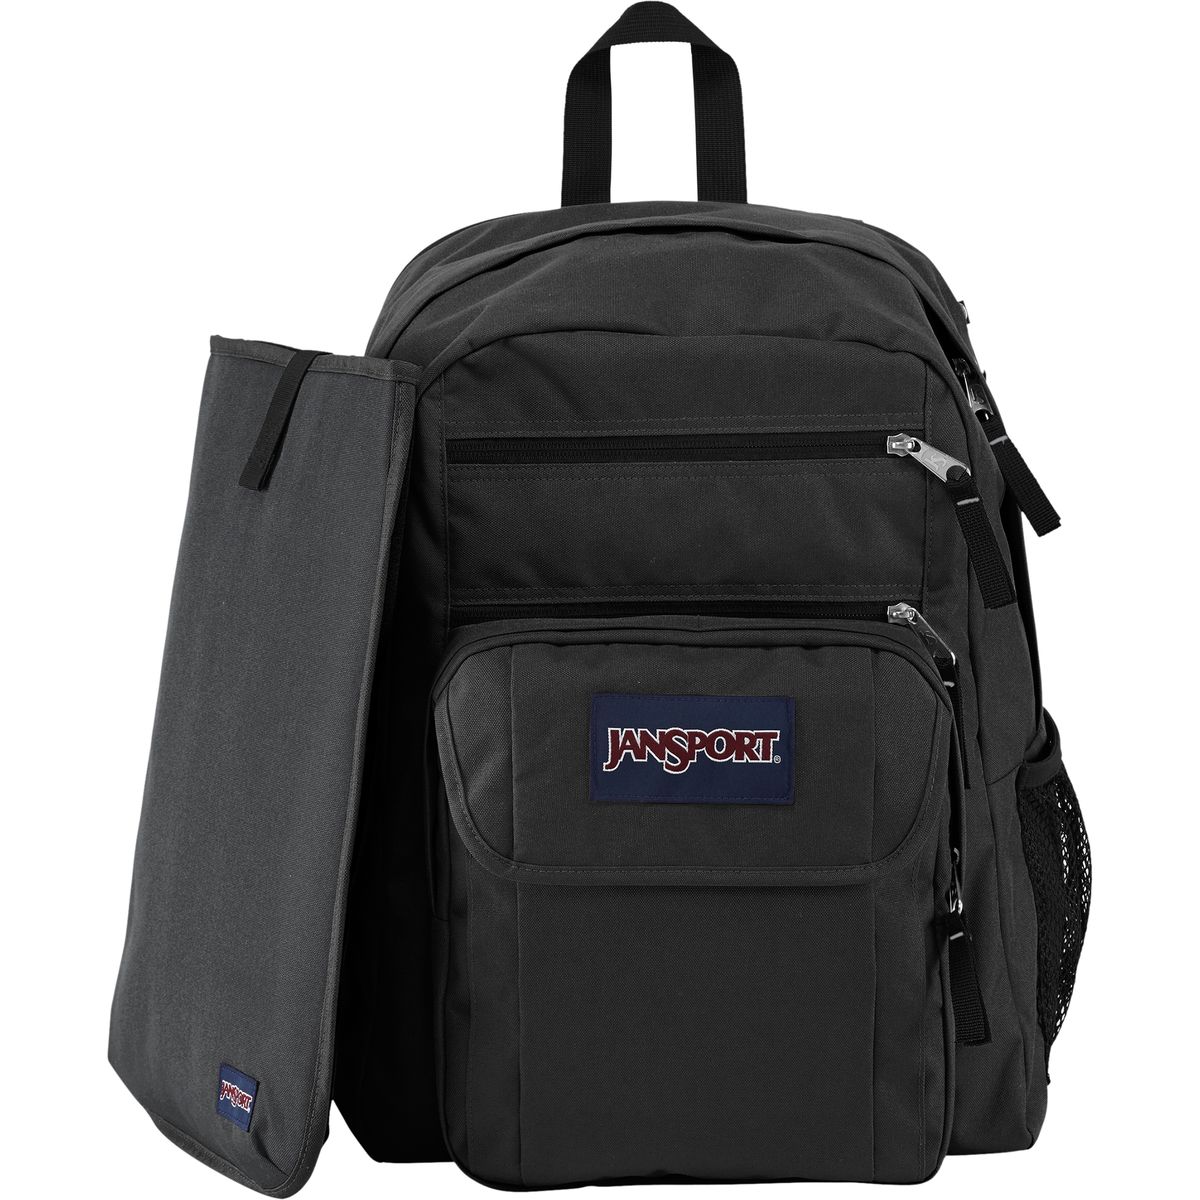 JanSport Digital Student 38L Backpack Black/Forge Grey, One Size | Shop Your Way: Online ...